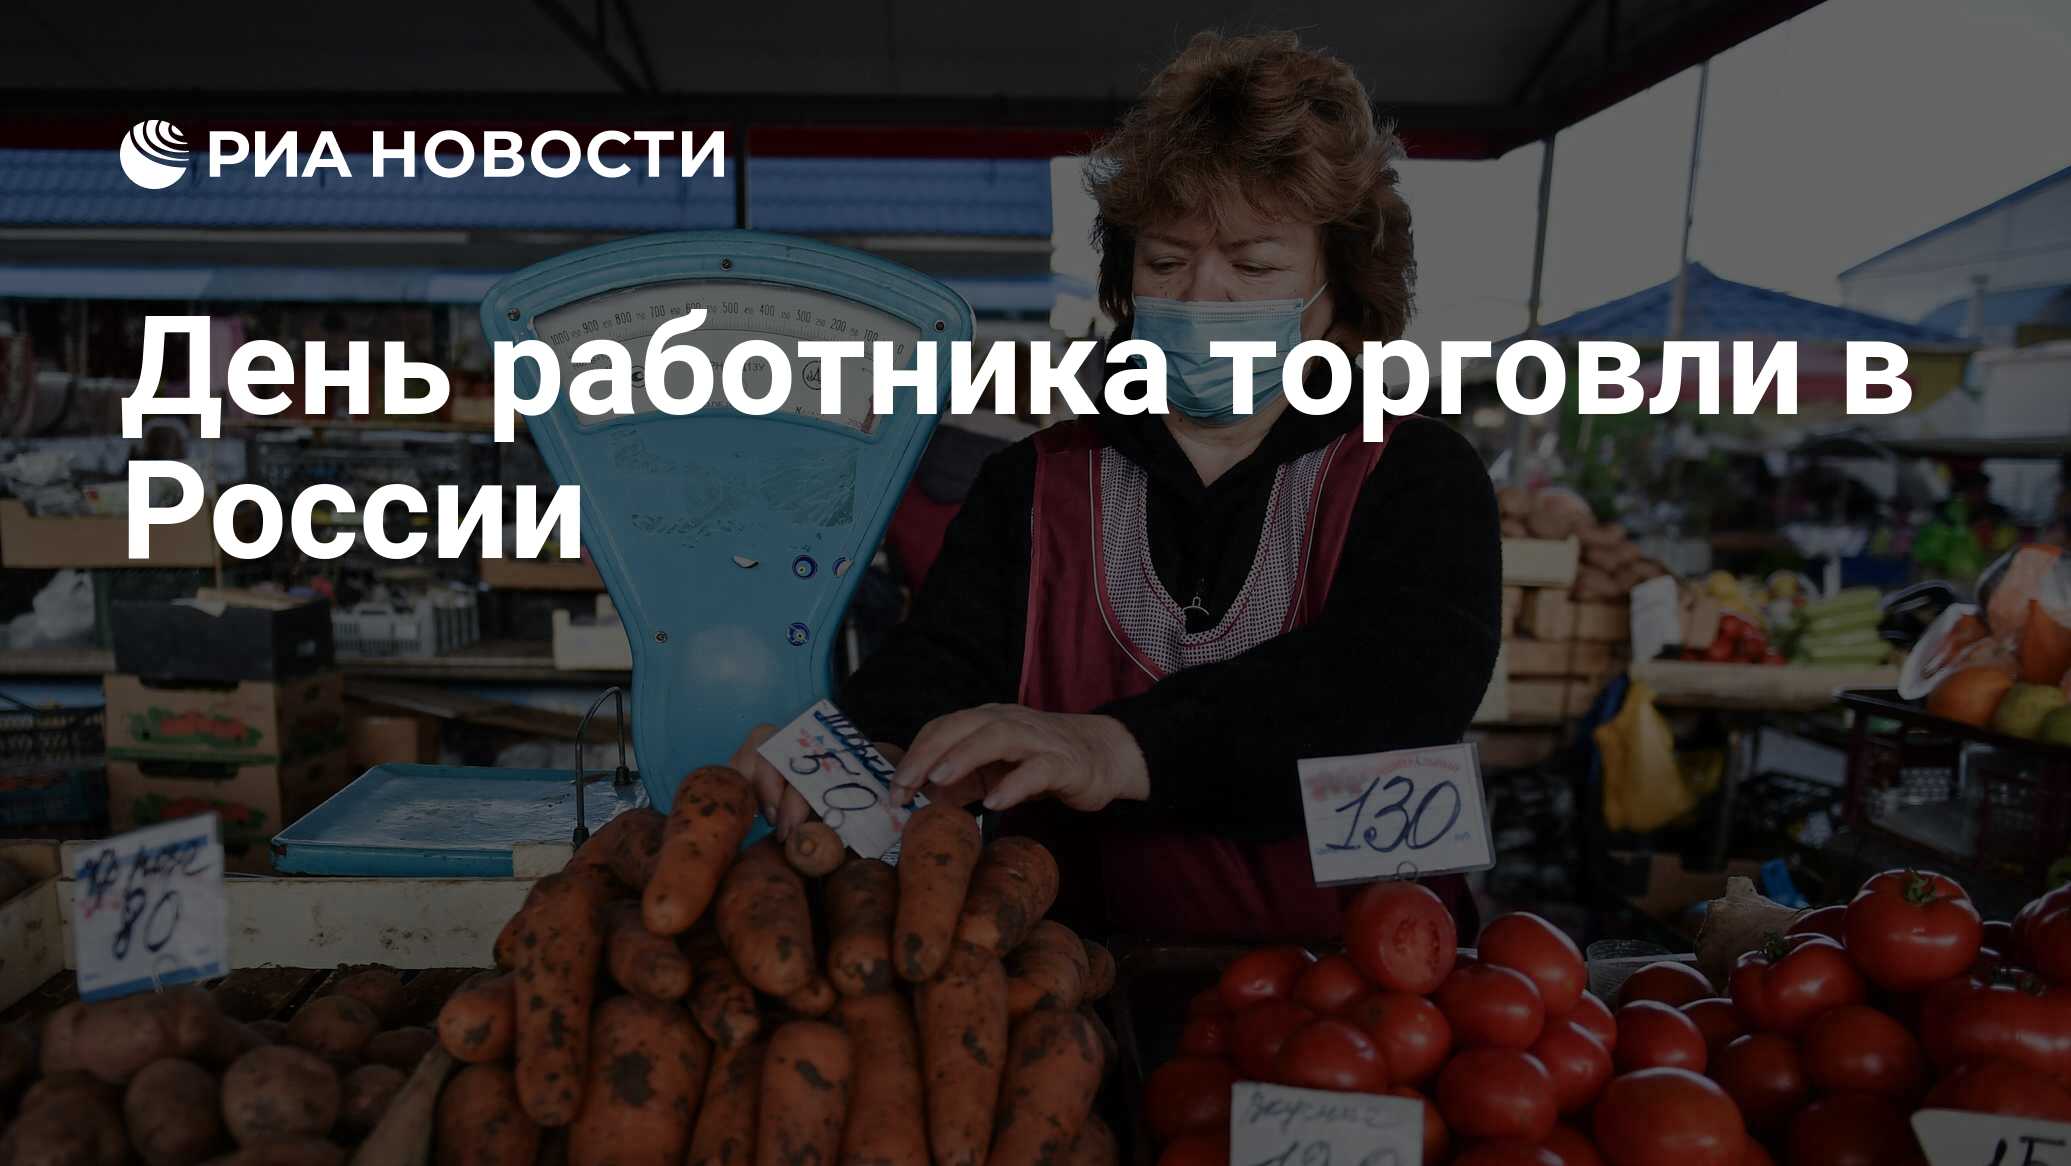 День работника торговли в России - РИА Новости, 24.07.2021